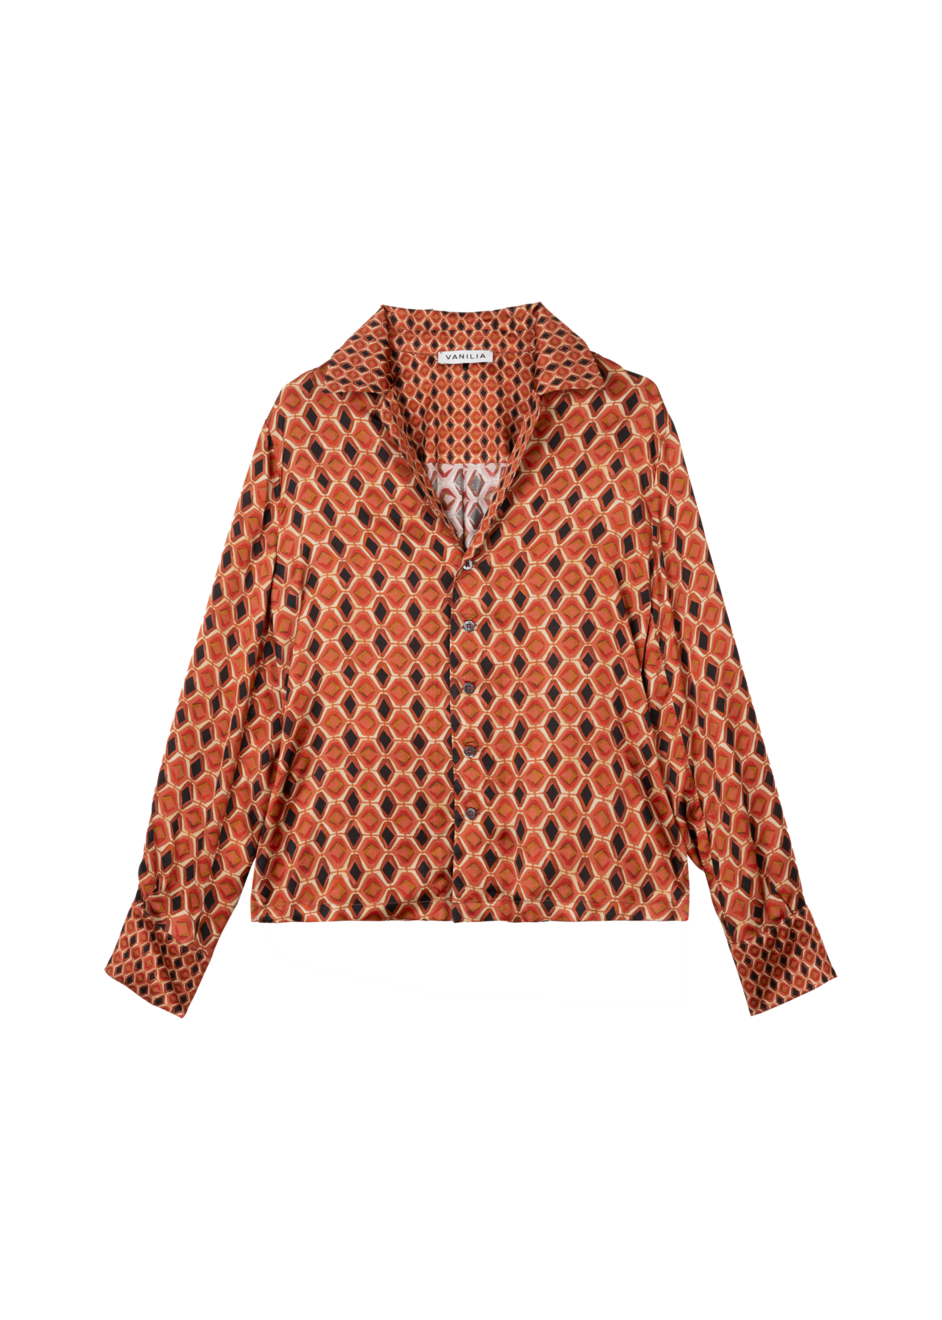 Aanbieding van Retro viscose blouse voor 159,95€ bij Vanilia